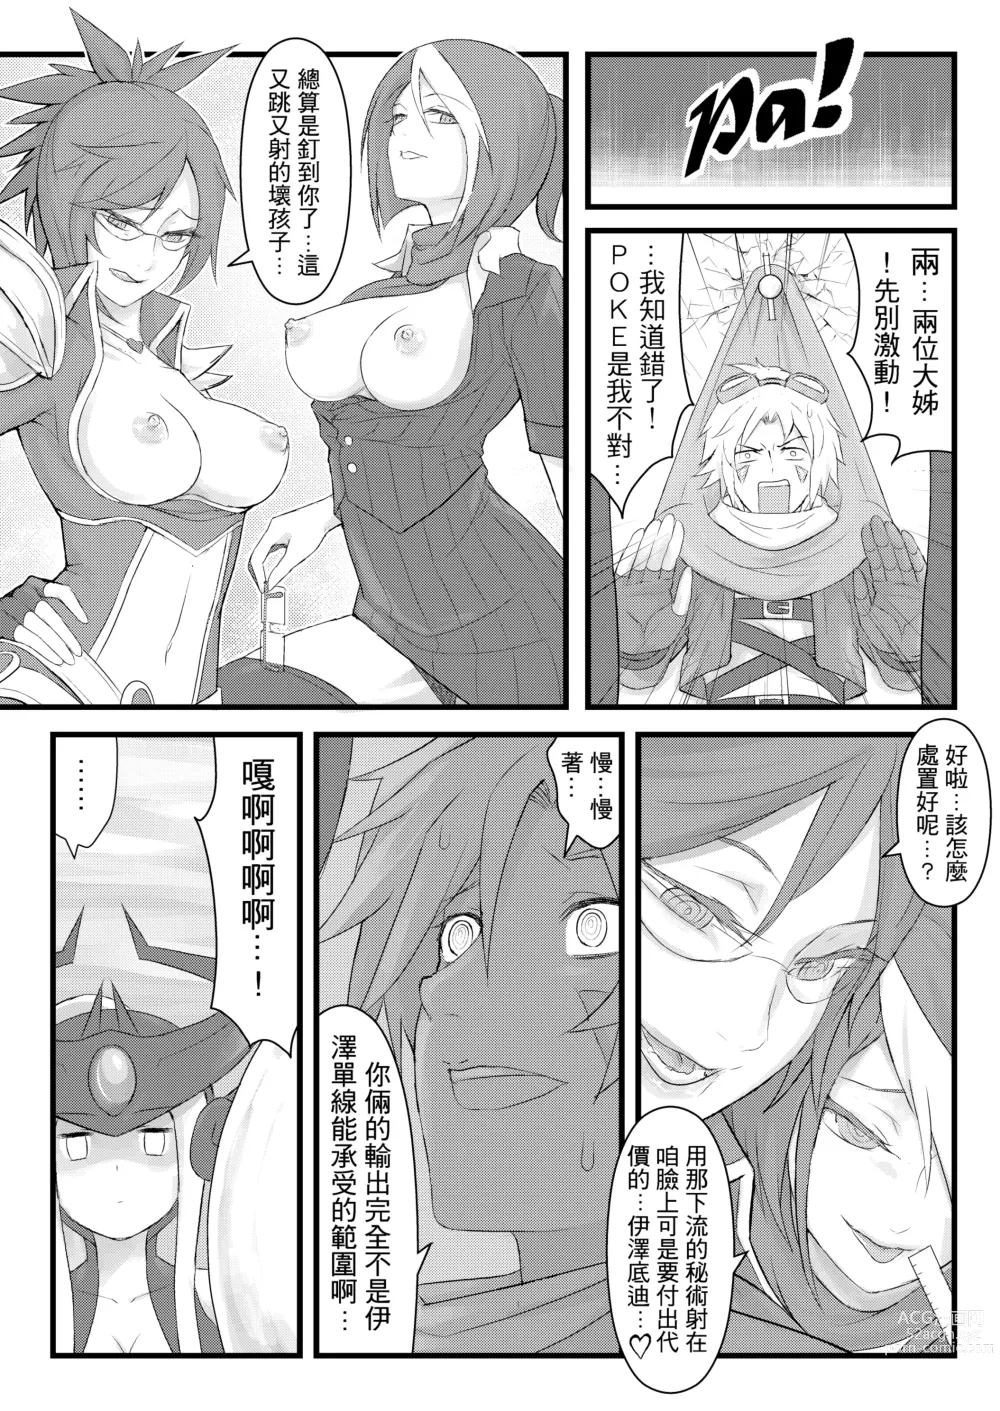 Page 9 of doujinshi ININ Renmei (uncensored)